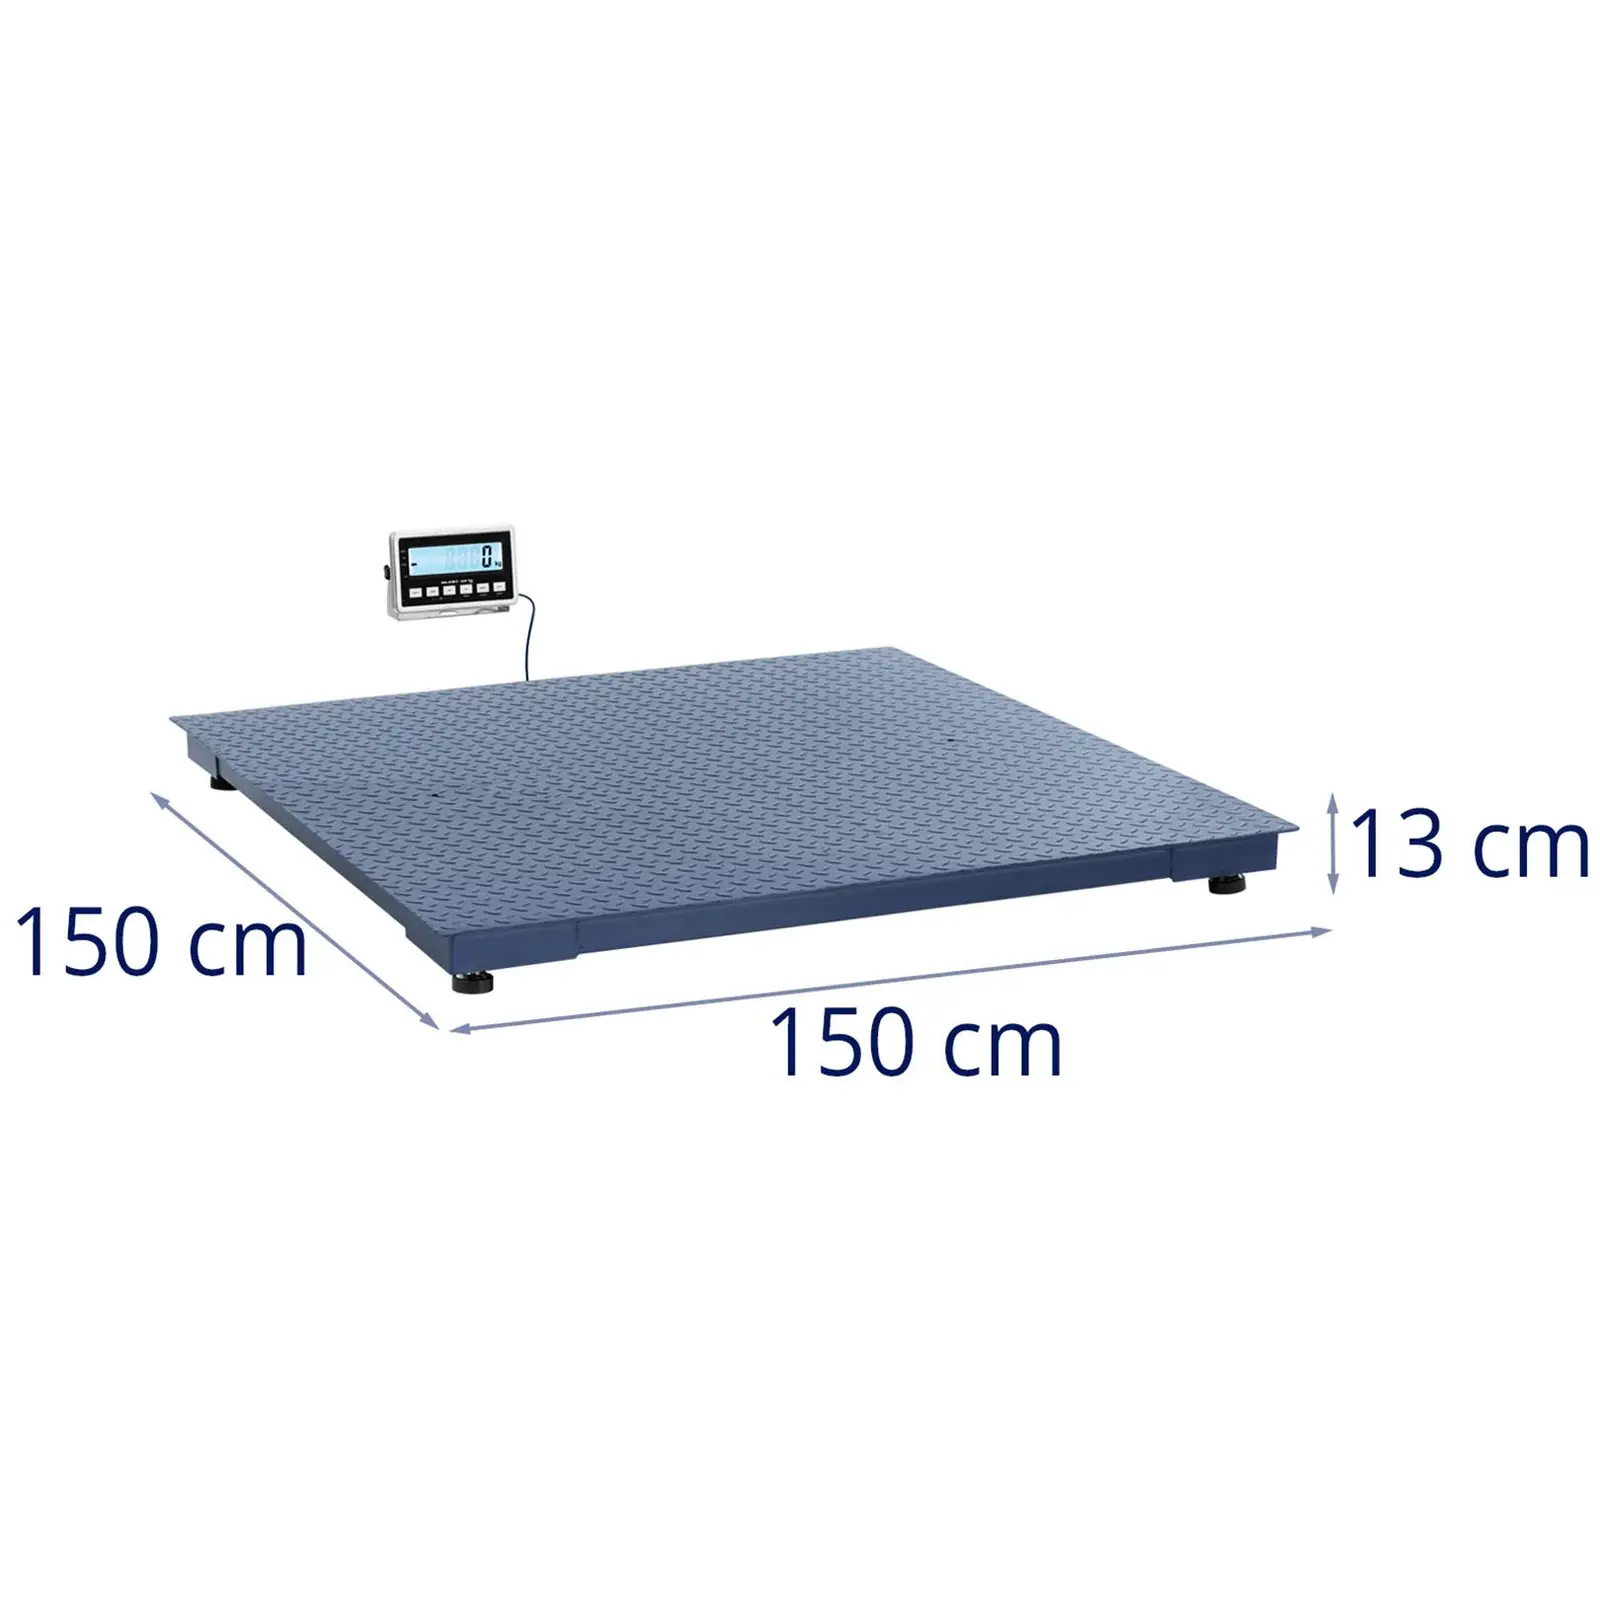 Báscula de suelo - 3000 kg / 1 kg - 1500 x 1500 mm - LCD